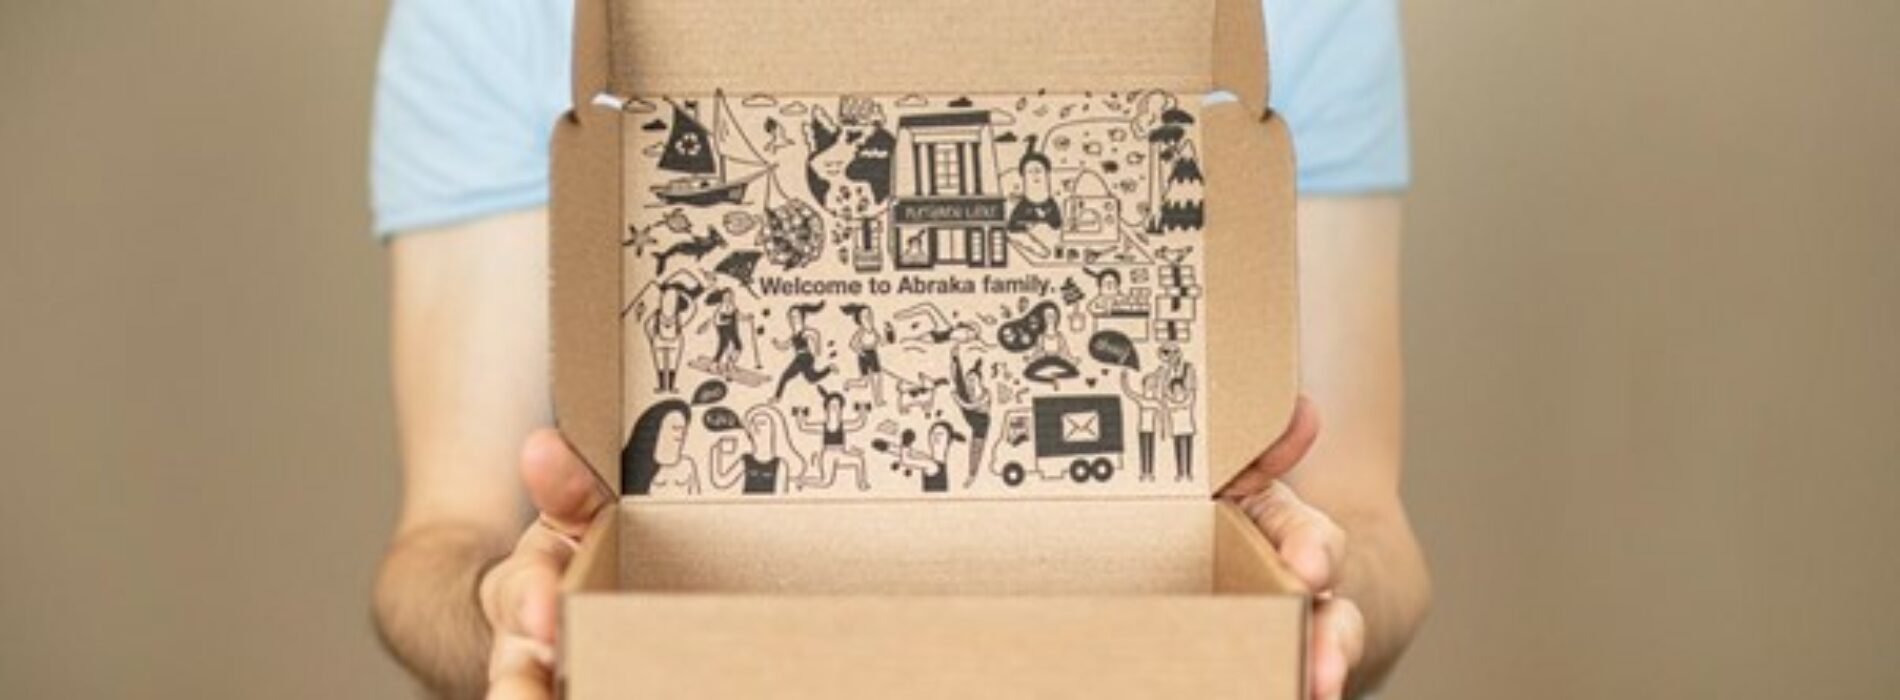 Od pudełka do marki: Jak historie o opakowaniach budują lojalność konsumencką